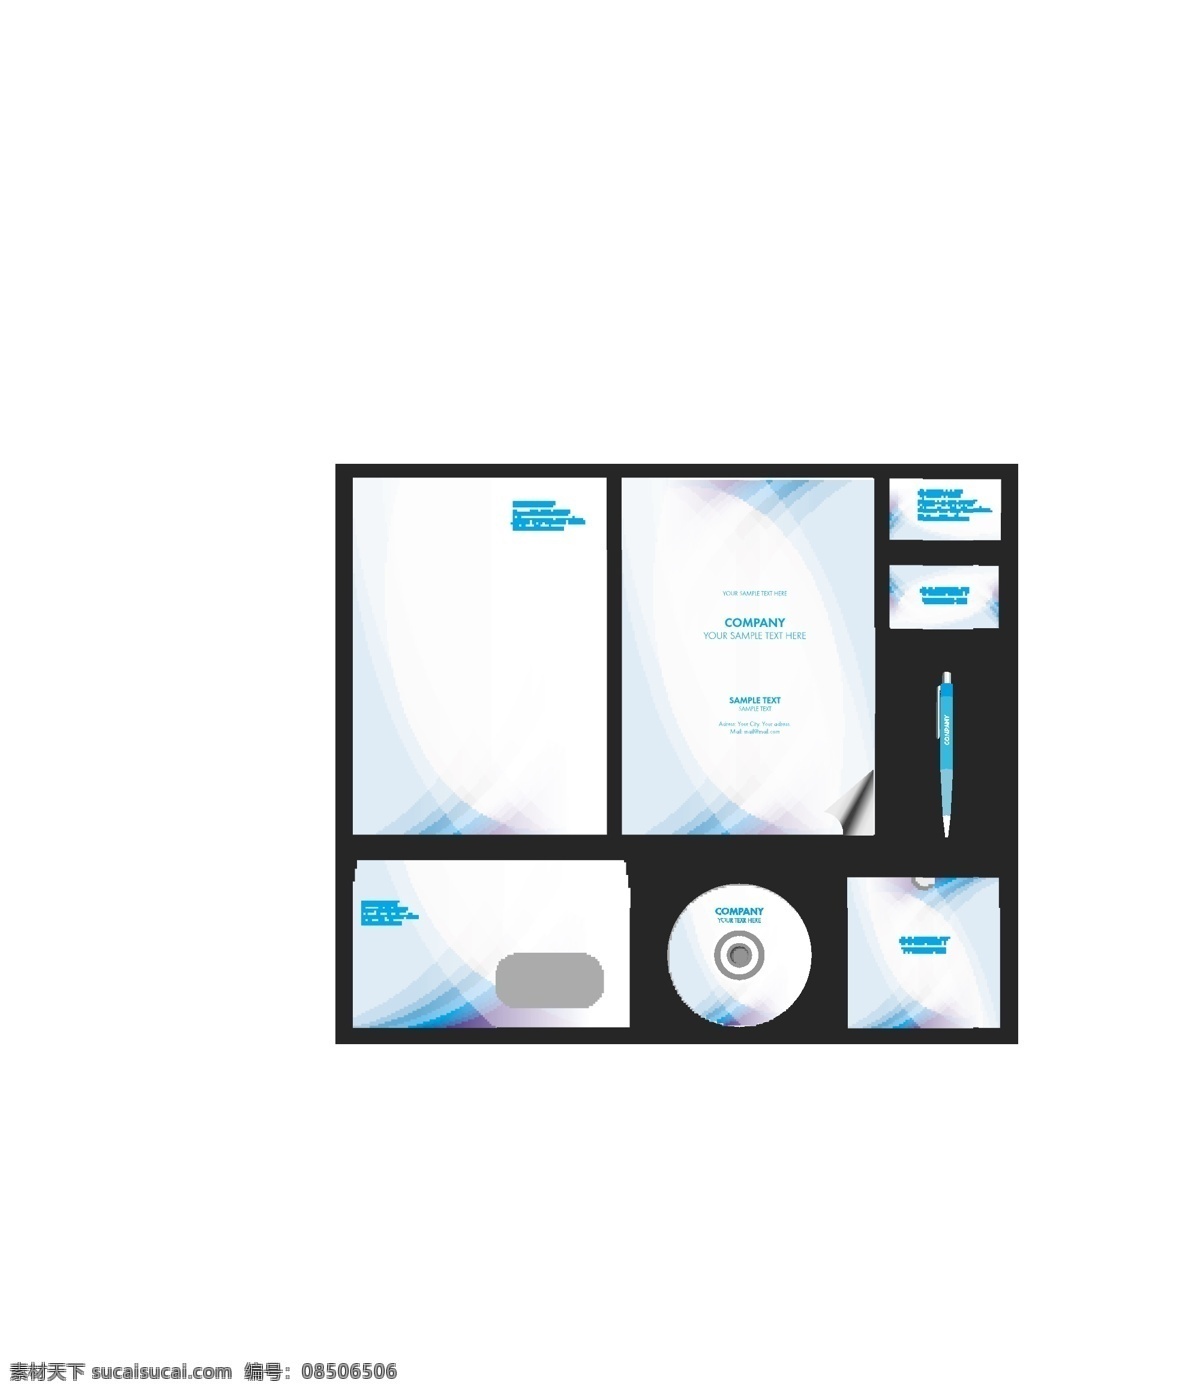 时尚 简约 vi 模板下载 素材图片 光盘 cd盒 名片模板 信封 信笺纸 笔 vi设计 折页传单 矢量素材 白色